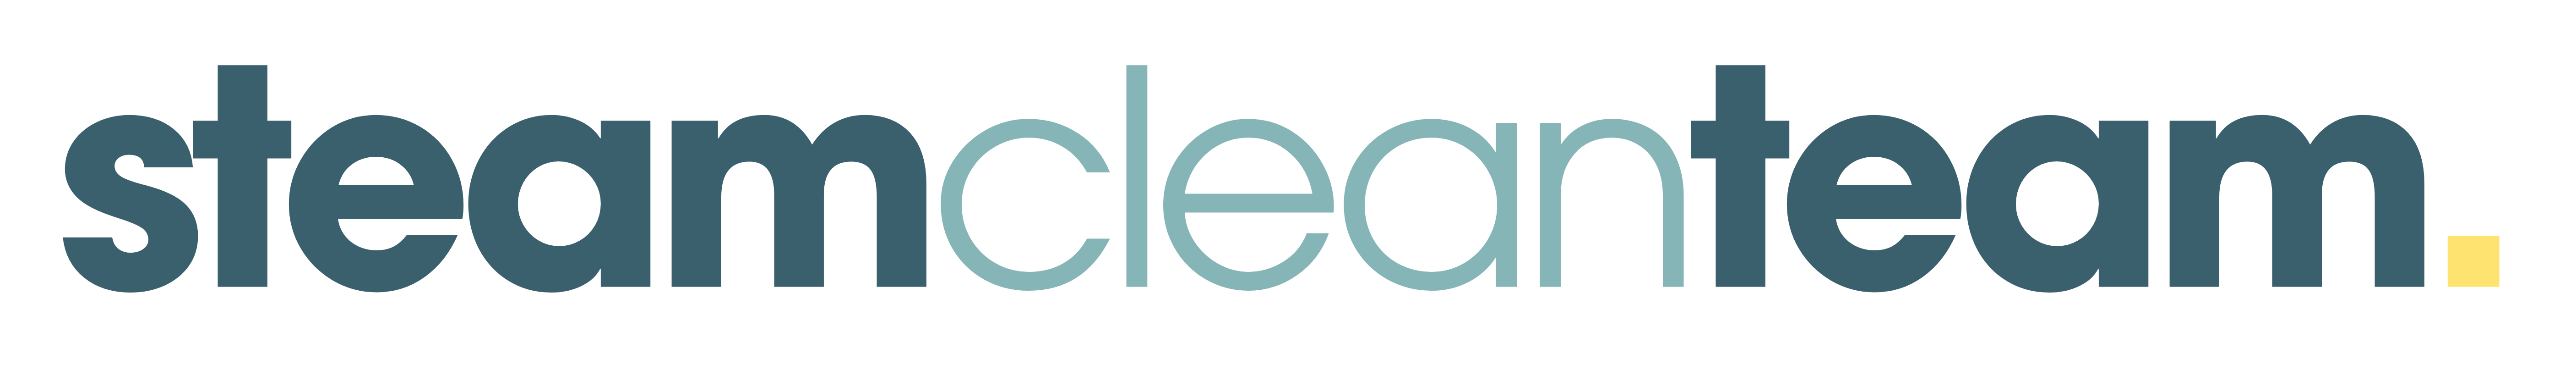 Steam Clean Team logo